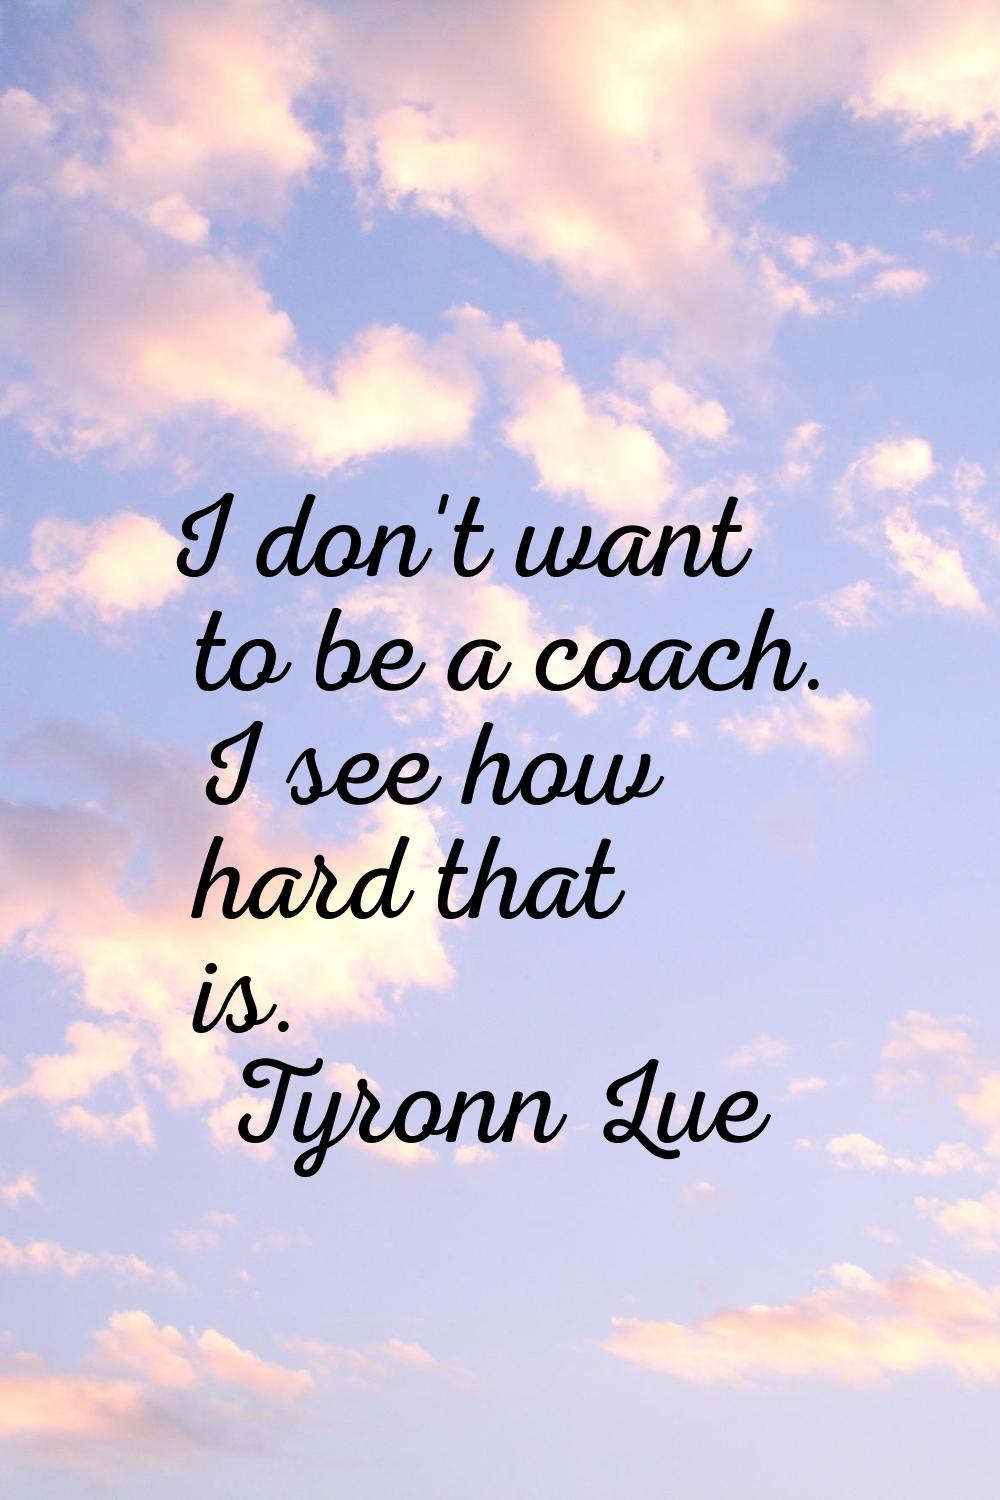 I don't want to be a coach. I see how hard that is.